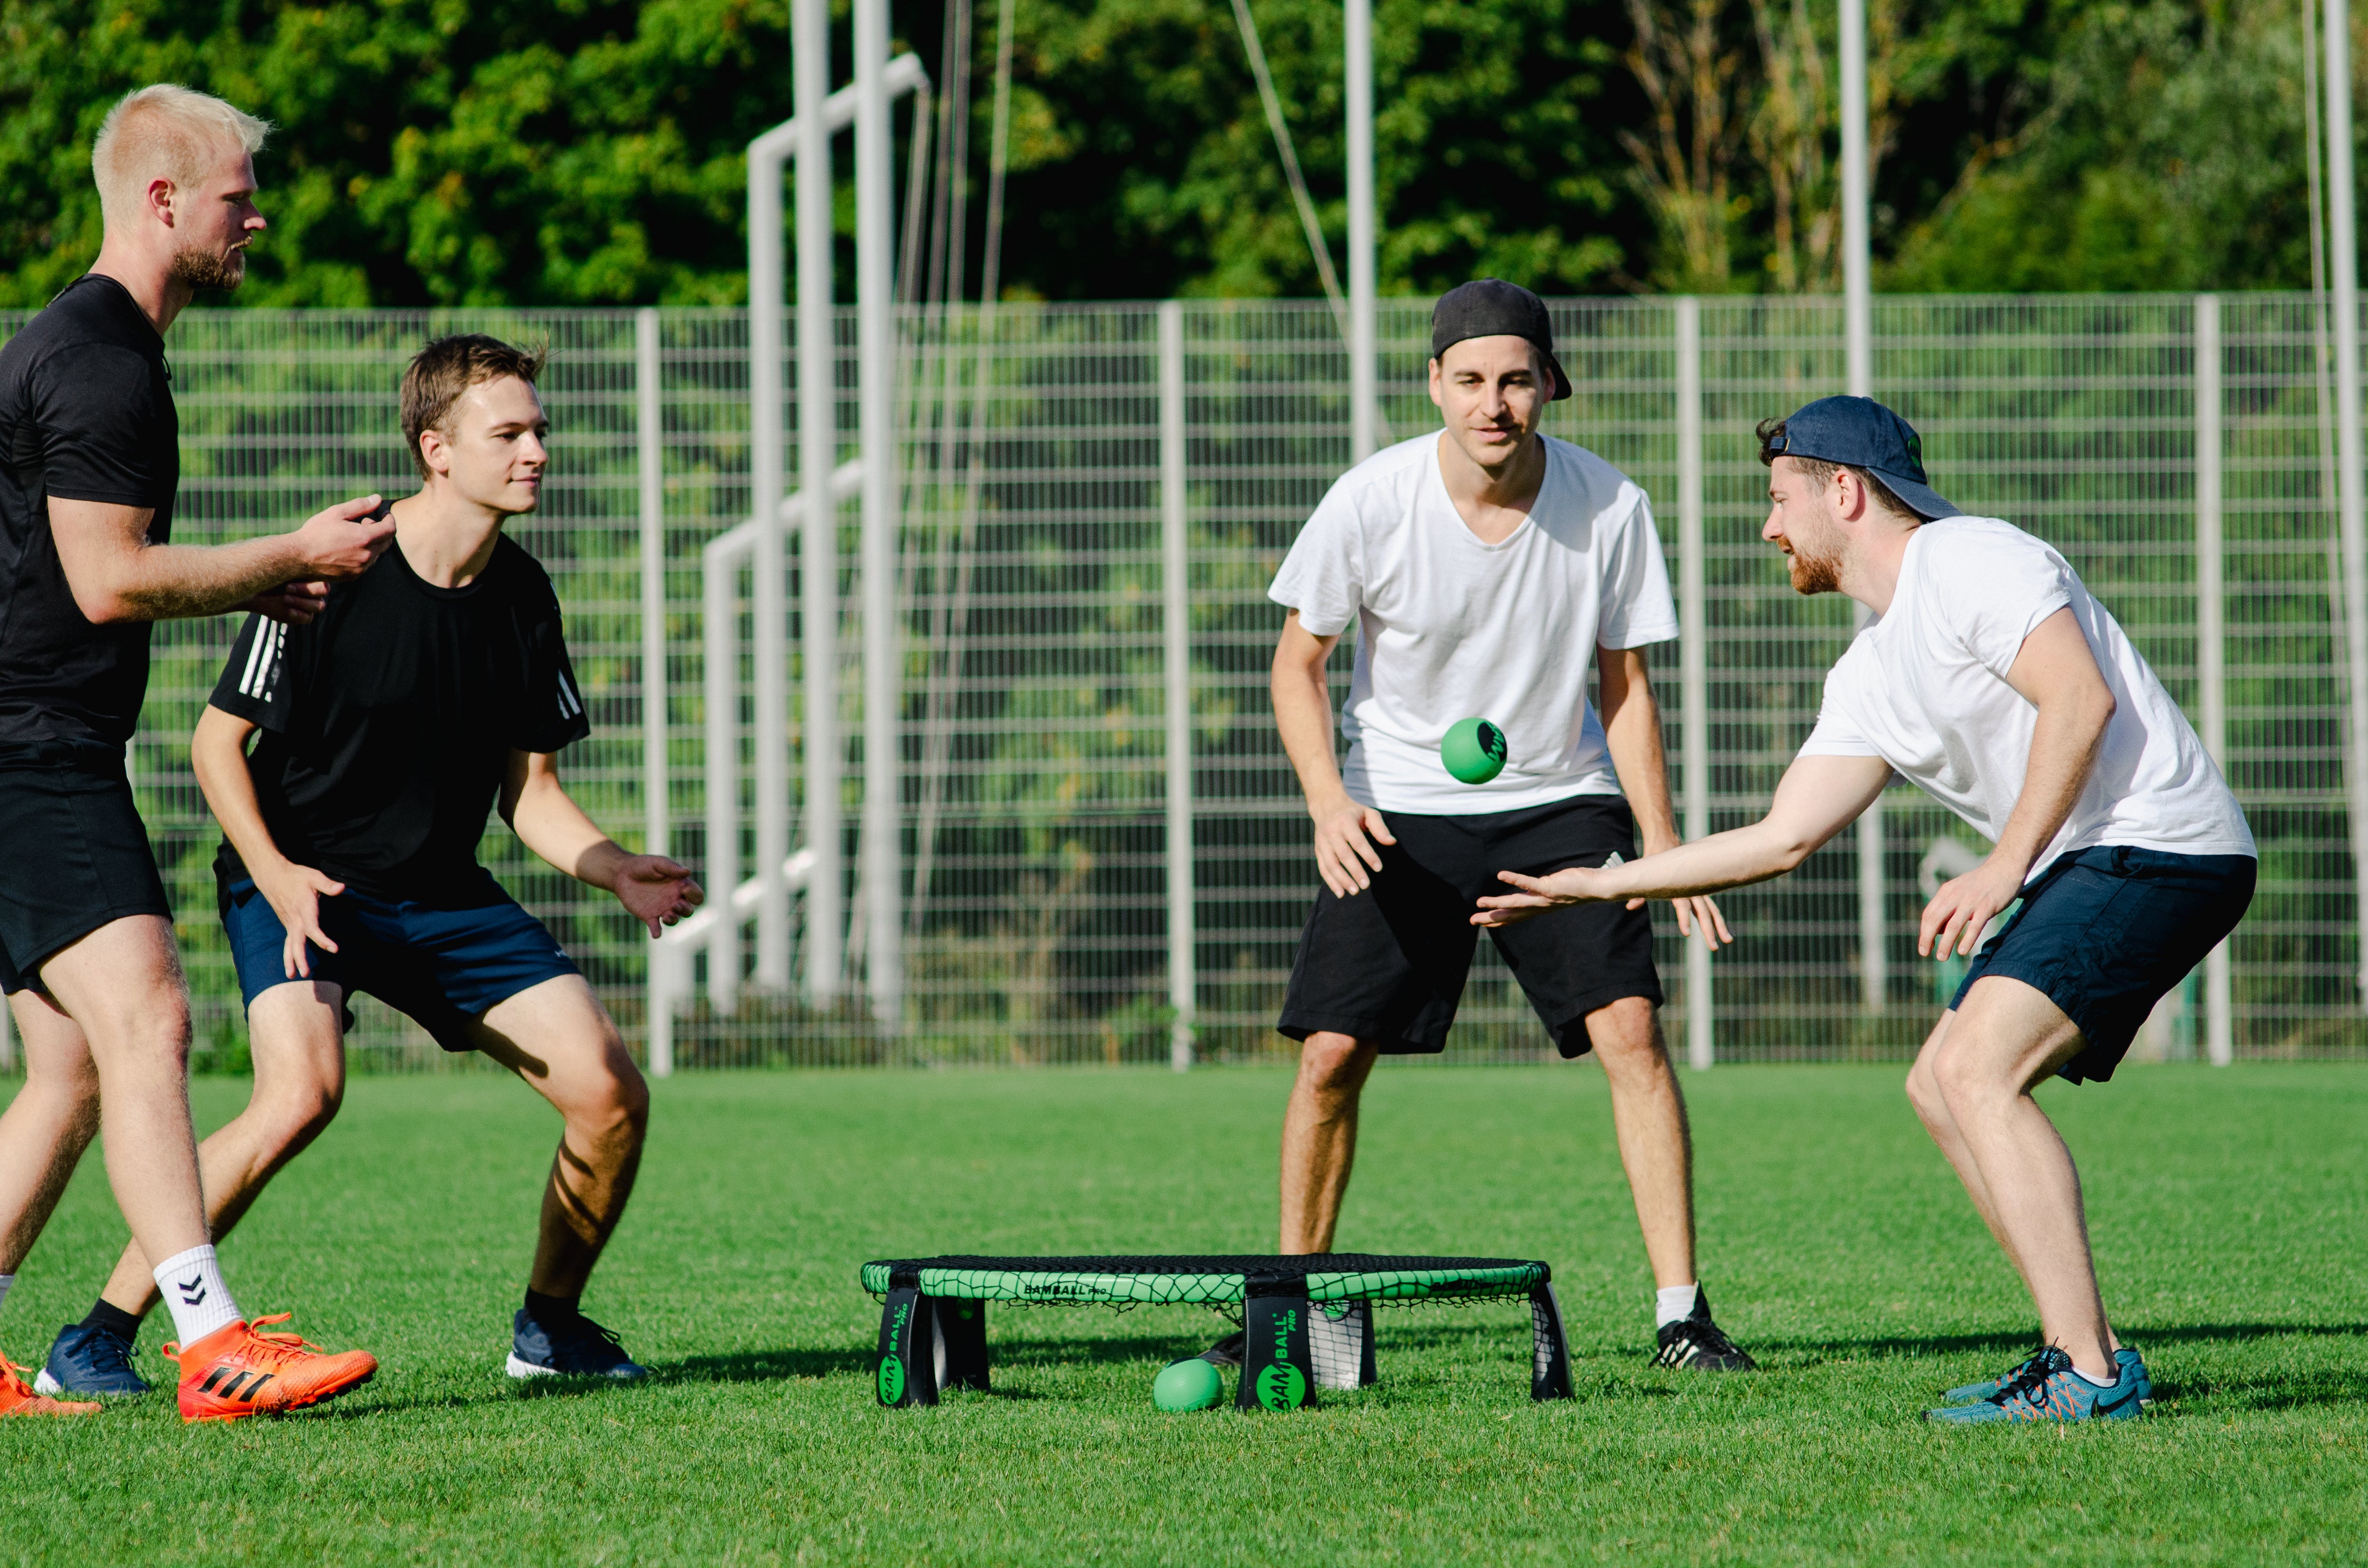 Vier Roundnet Sportler auf Gras, ein Spieler ist kurz davor, den Ball für seinen Mitspieler zu stellen